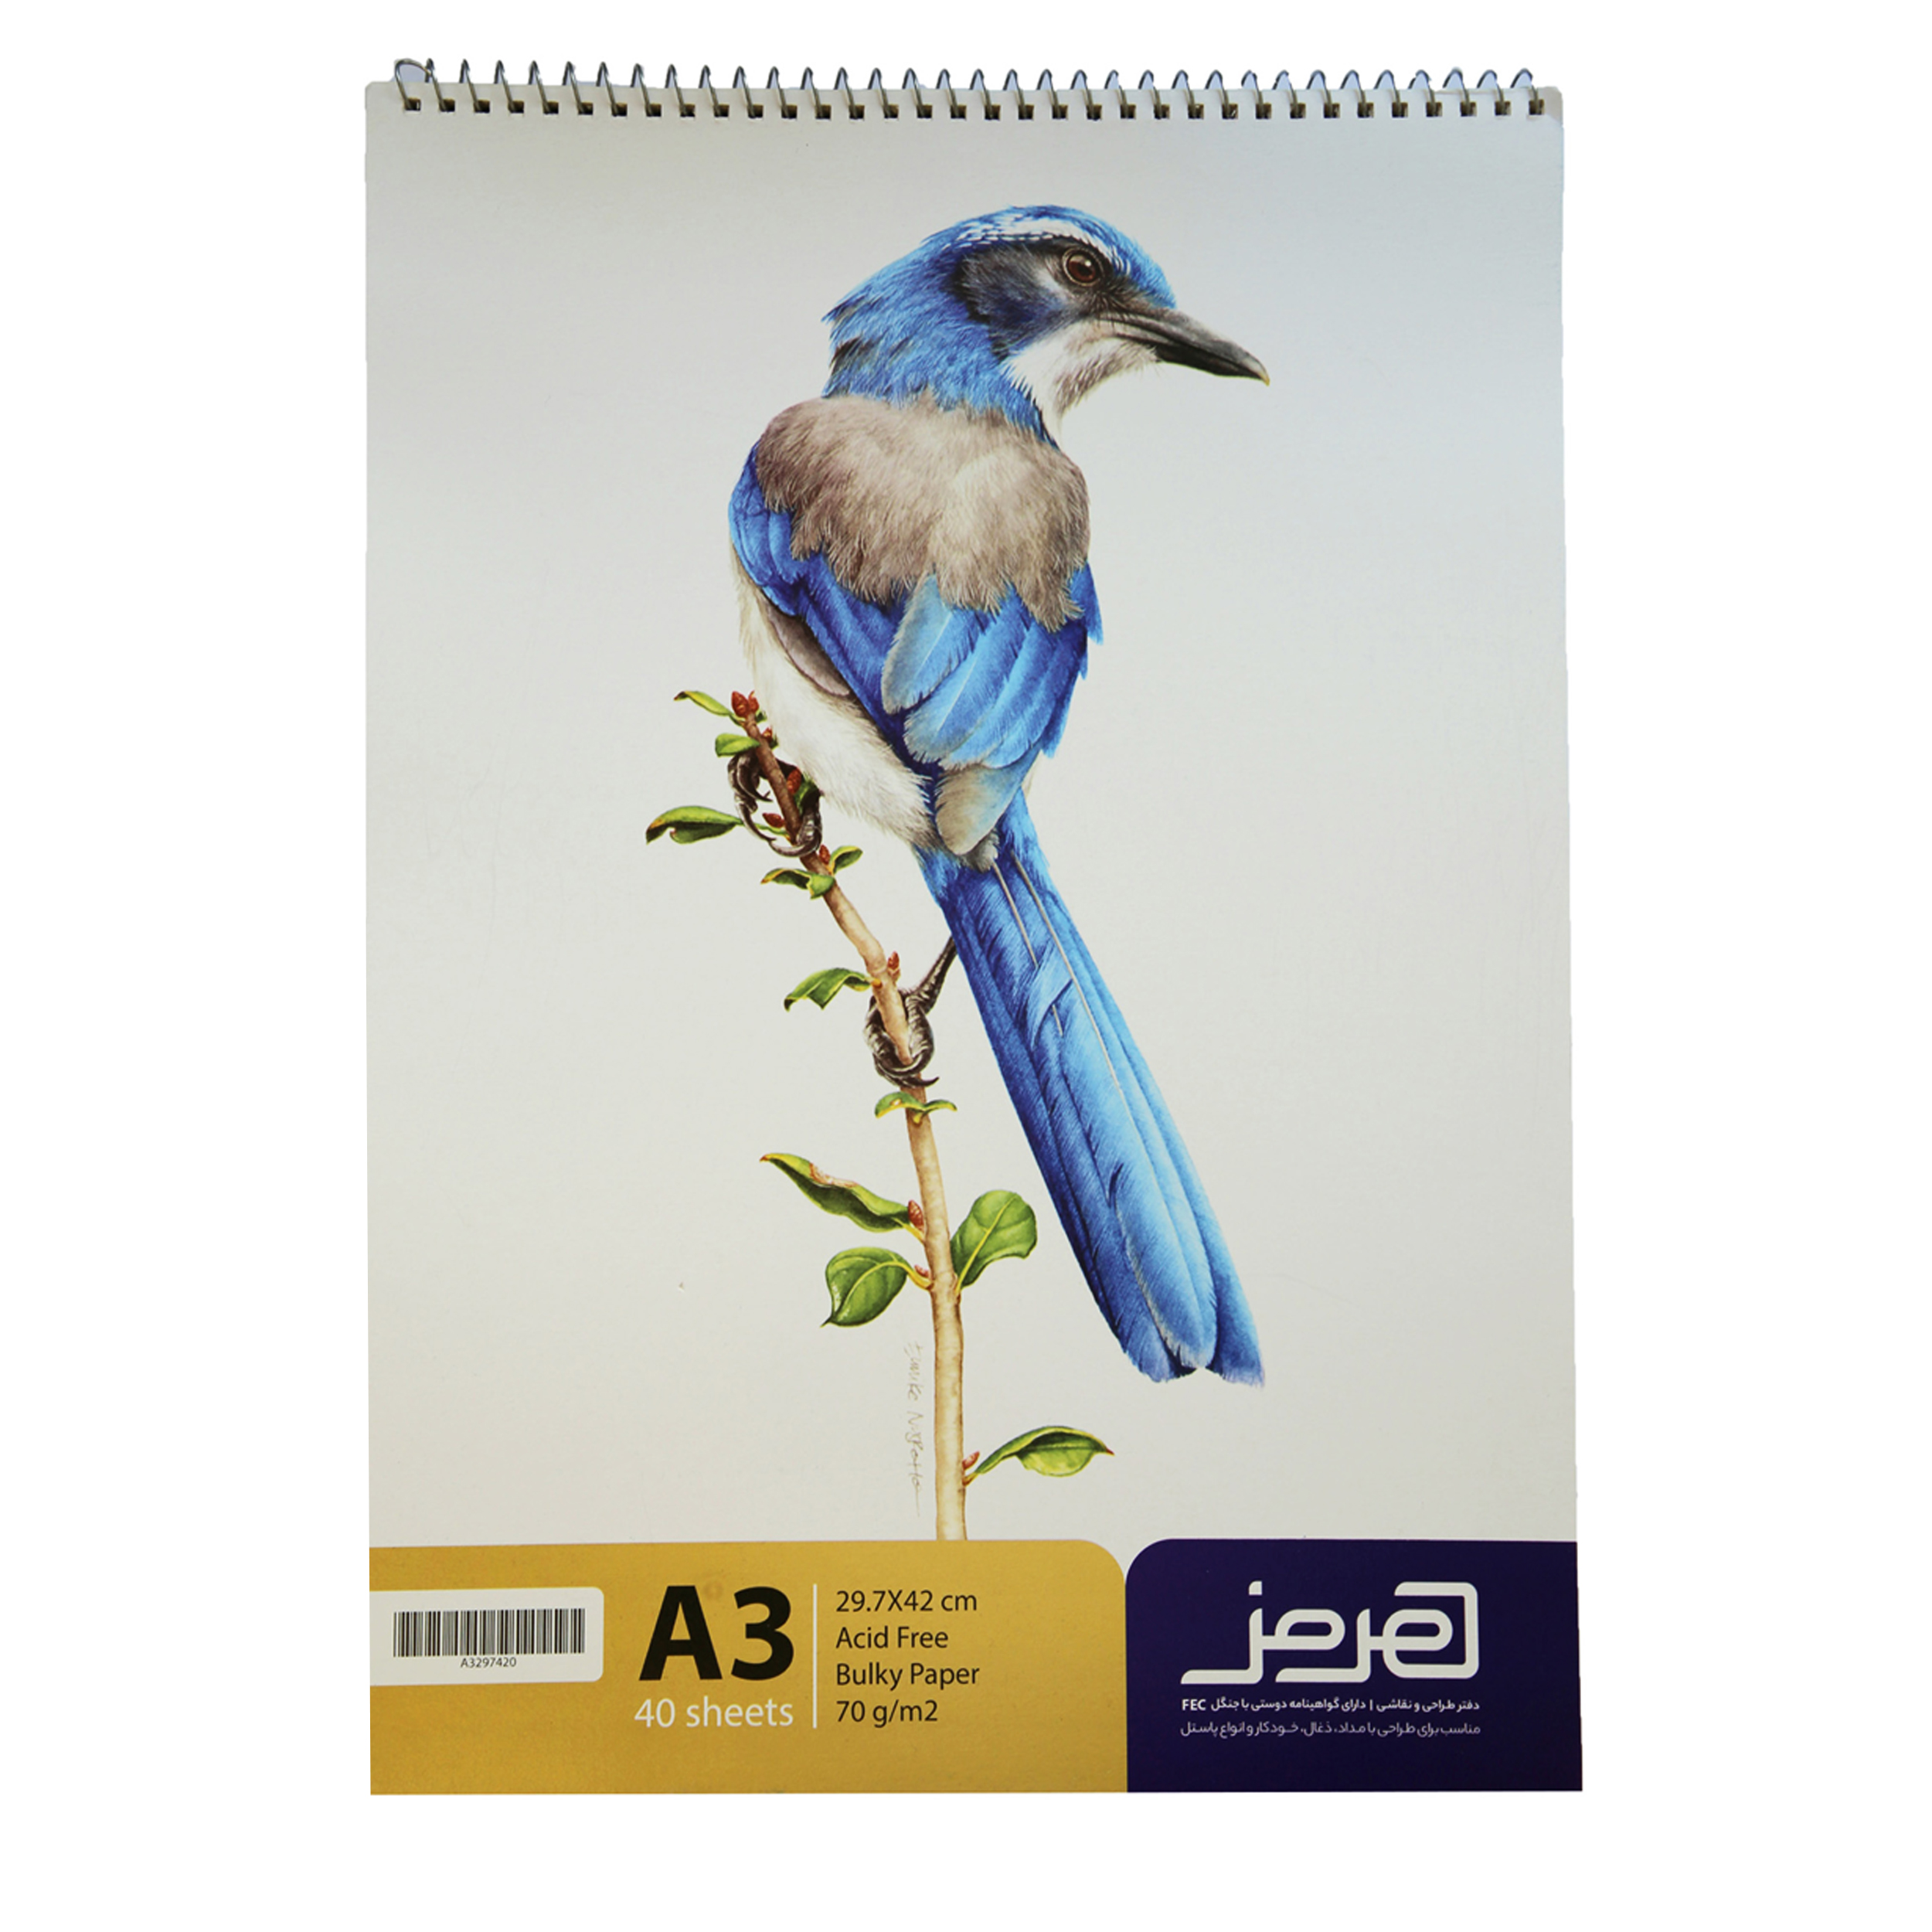 آنباکس دفتر طراحی هرمز طرح پرنده کد 005 توسط عبداله آقاکاظم جوراب باف در تاریخ ۱۳ شهریور ۱۳۹۹